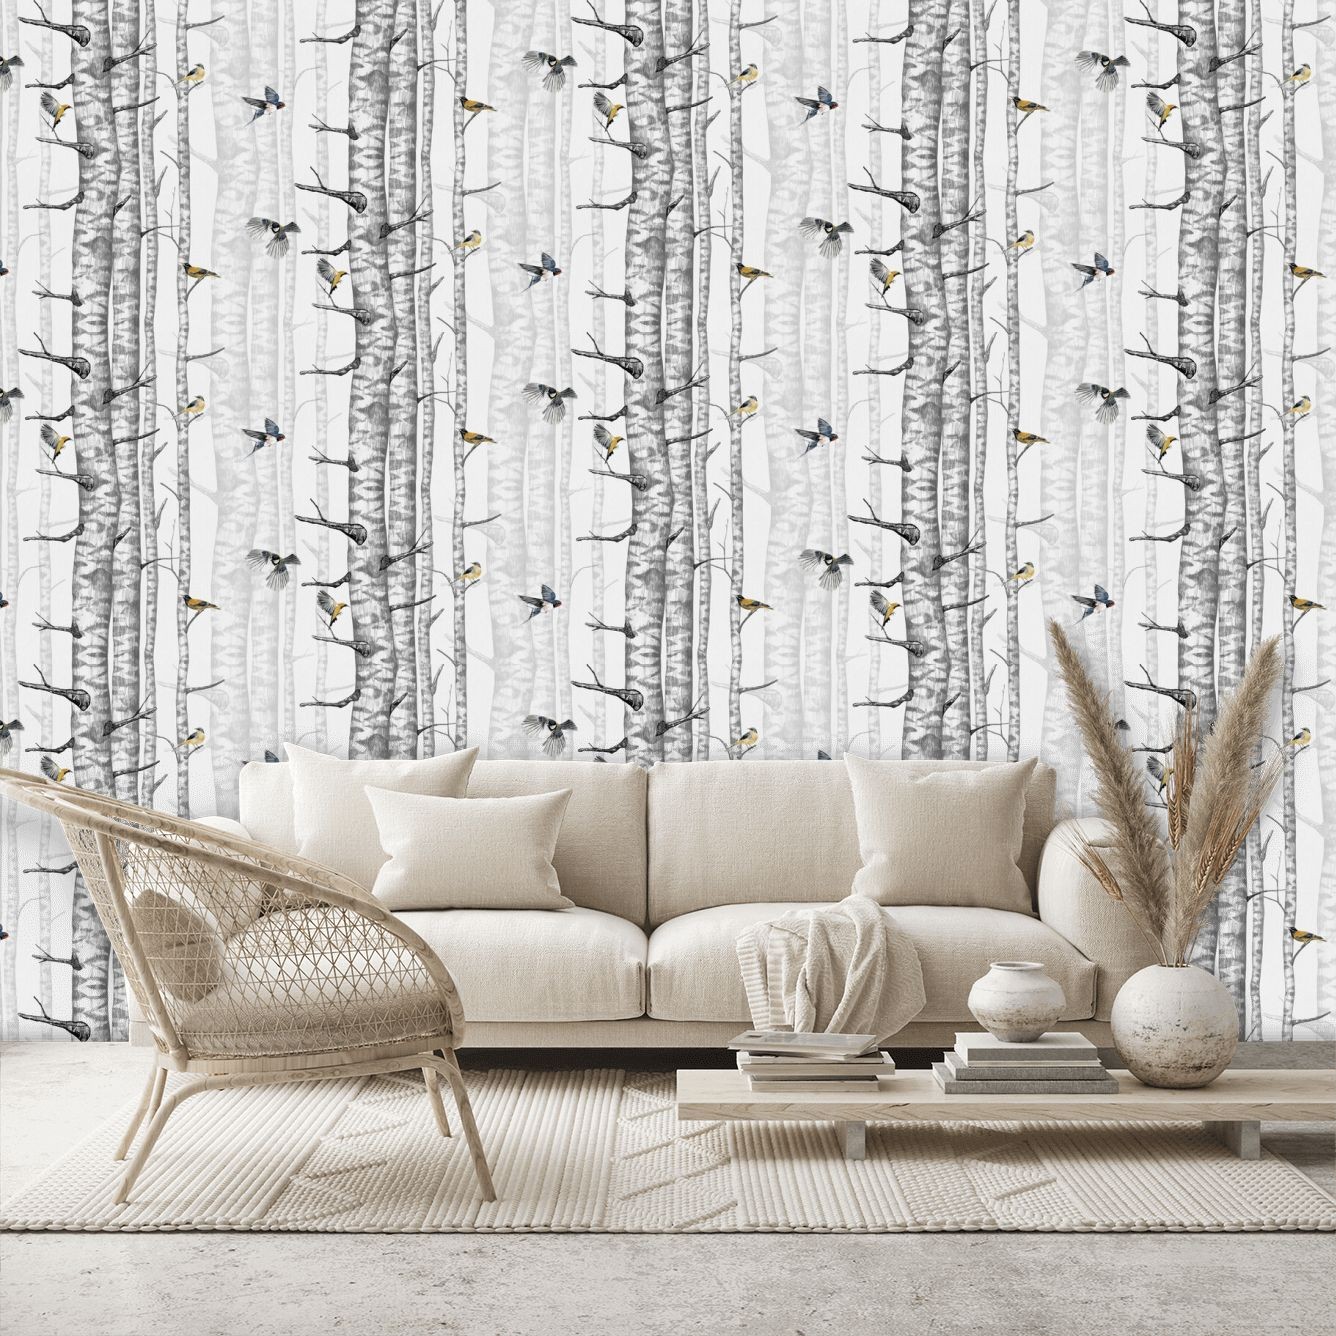 Birch Trees Wallpaper - Grey - By Coordonne - 9500040